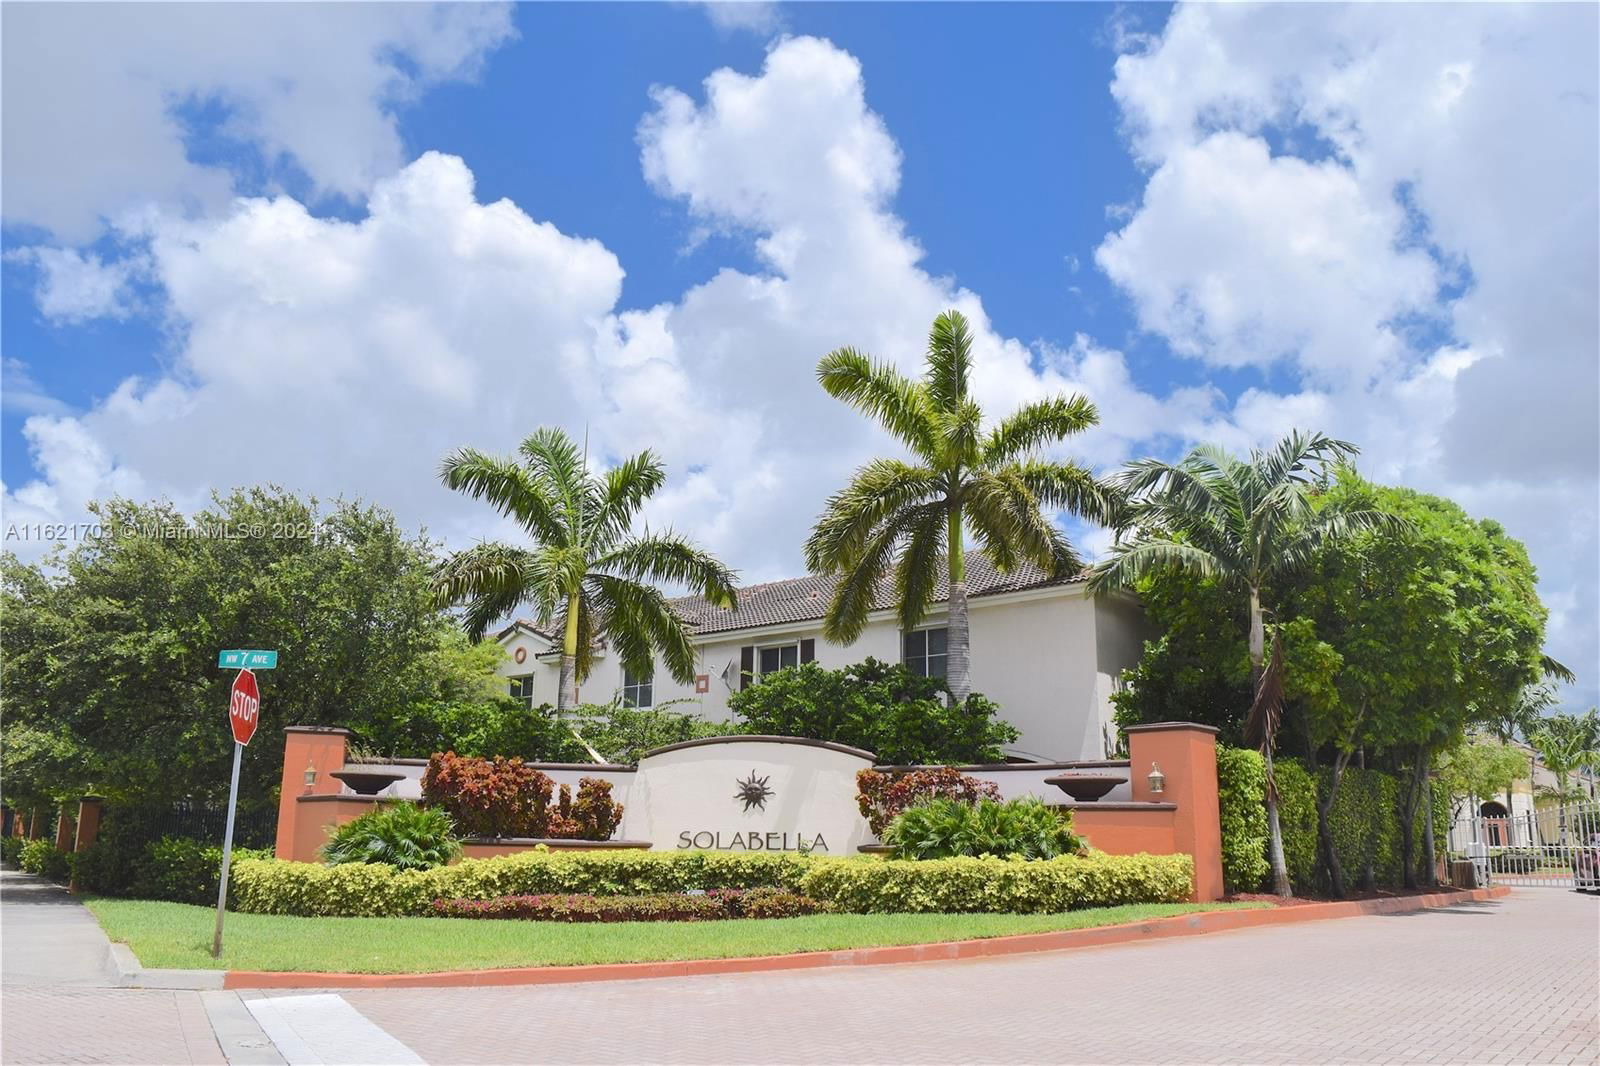 Real estate property located at 17345 7th Ave #803, Miami-Dade County, SOLABELLA CONDO, Miami Gardens, FL